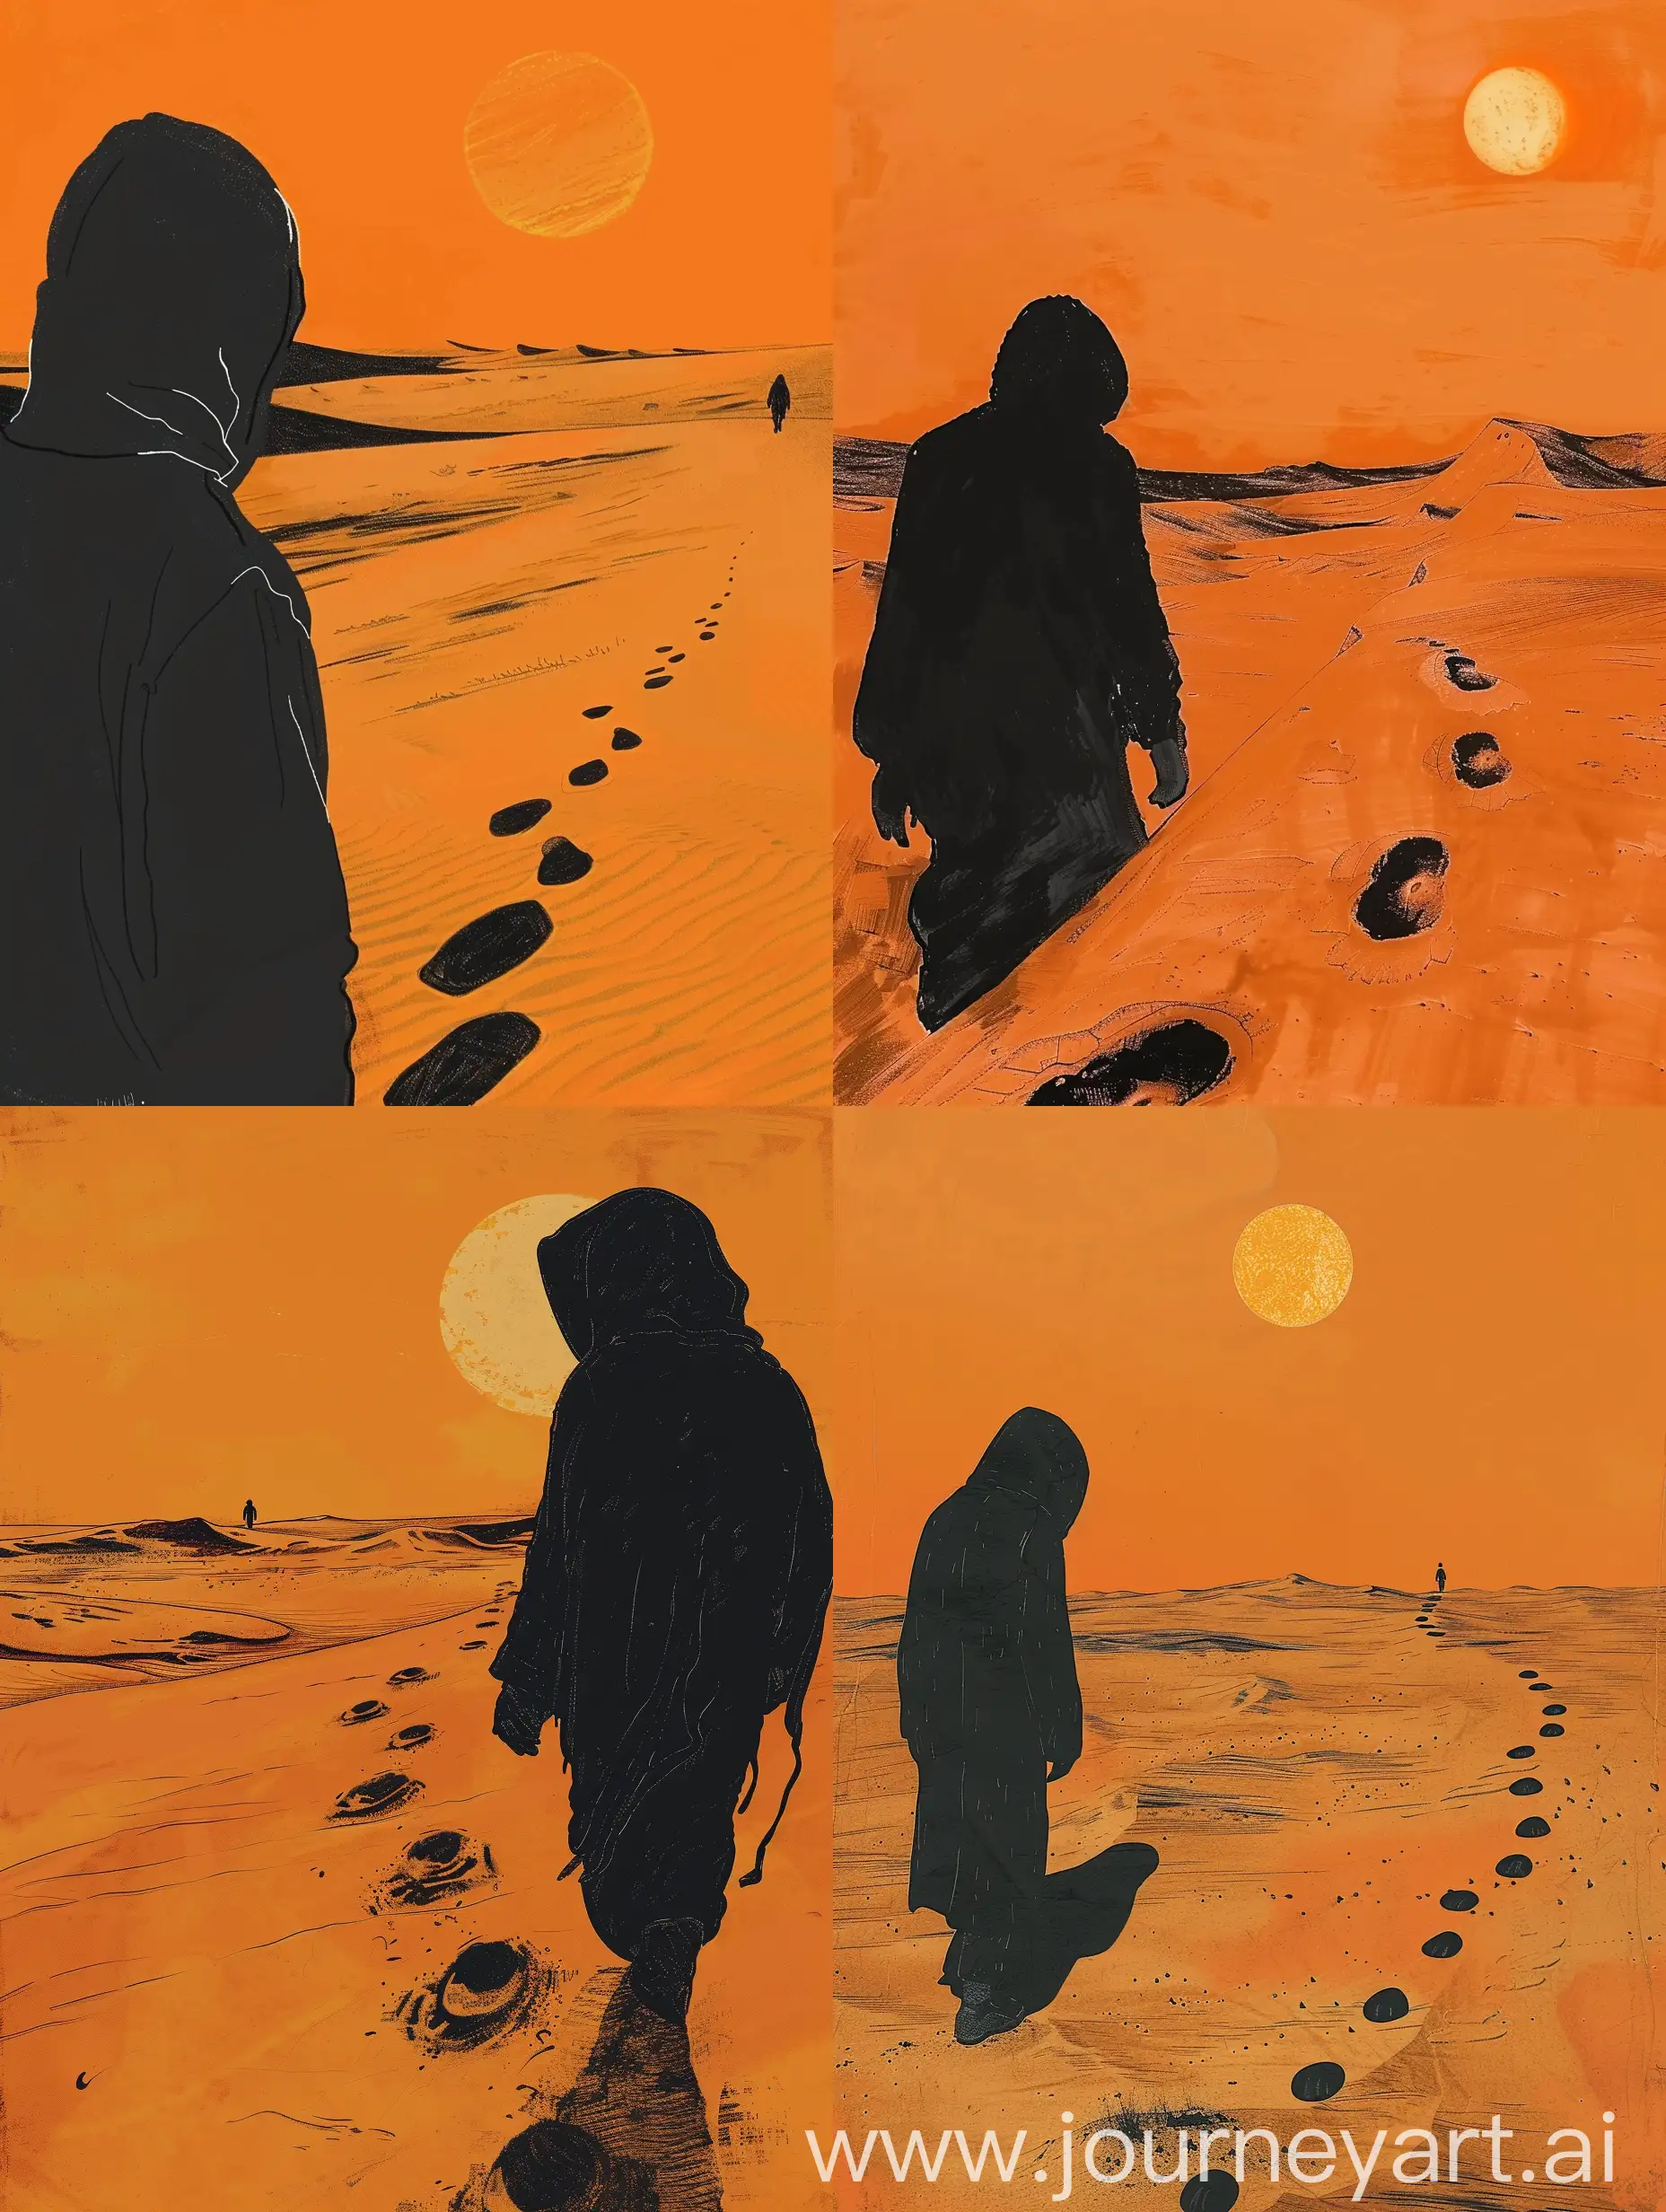 Hooded-Figure-Walking-in-Orange-and-Black-Desert